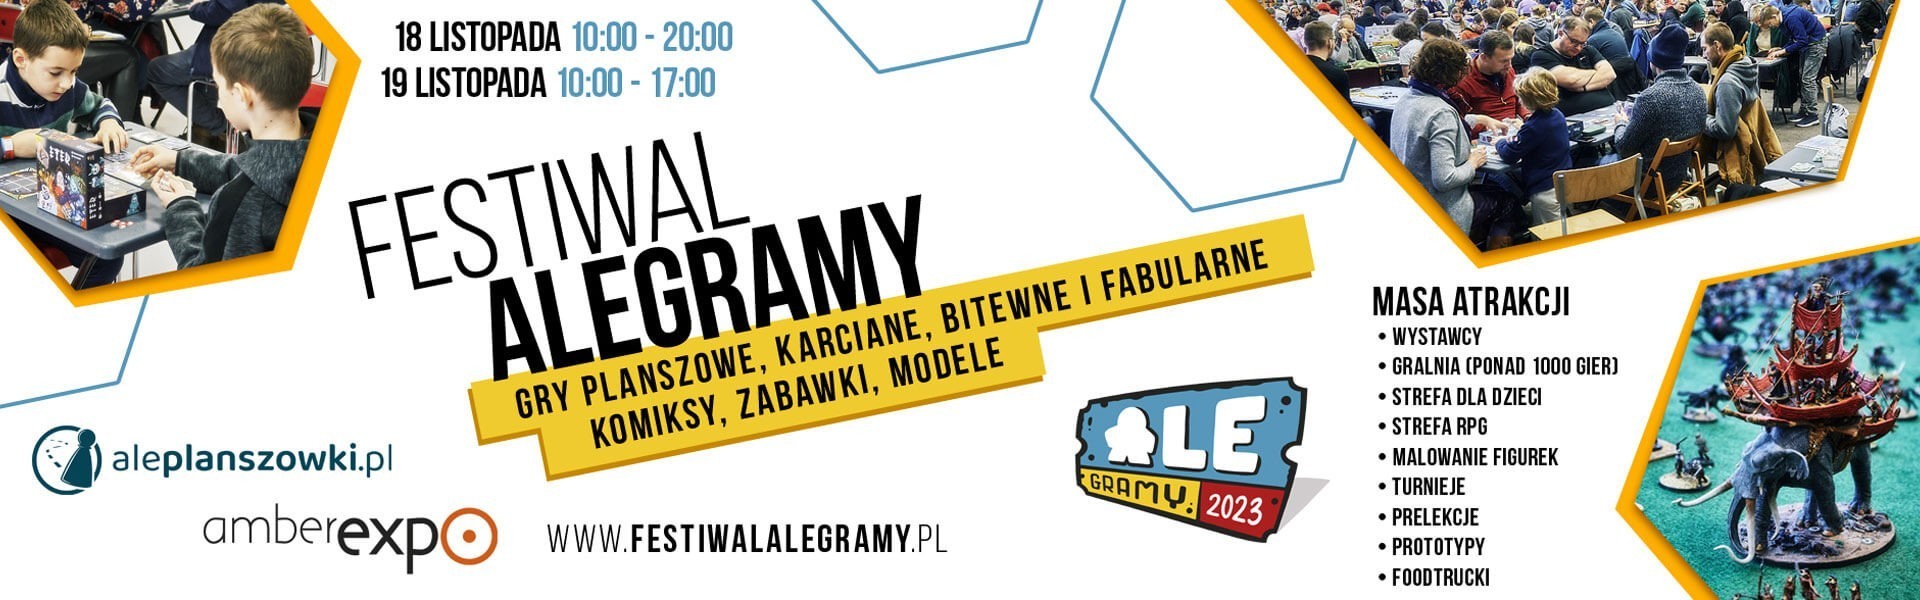 Festiwal ALEgramy 